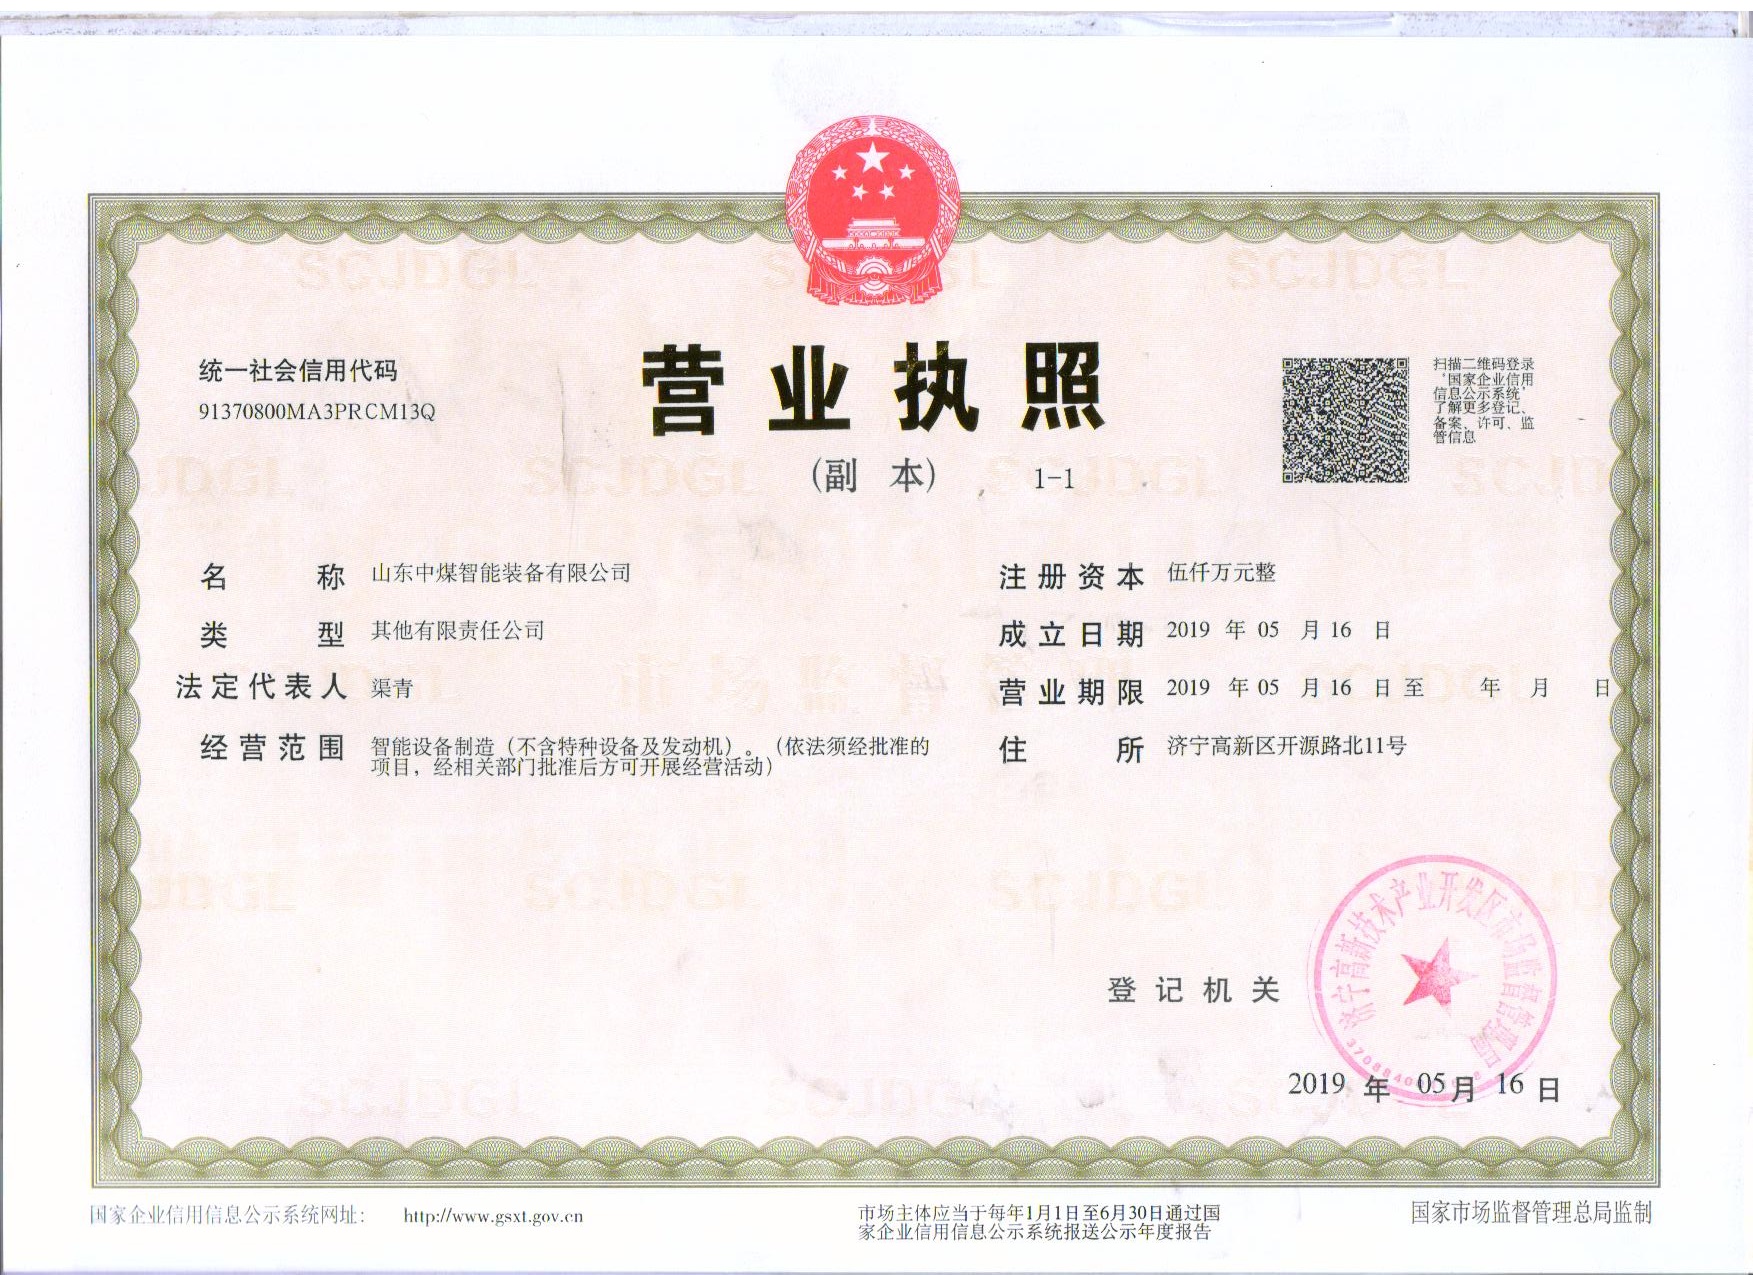  Shandong Zhongmei Intelligent Equipment Co., Ltd. 